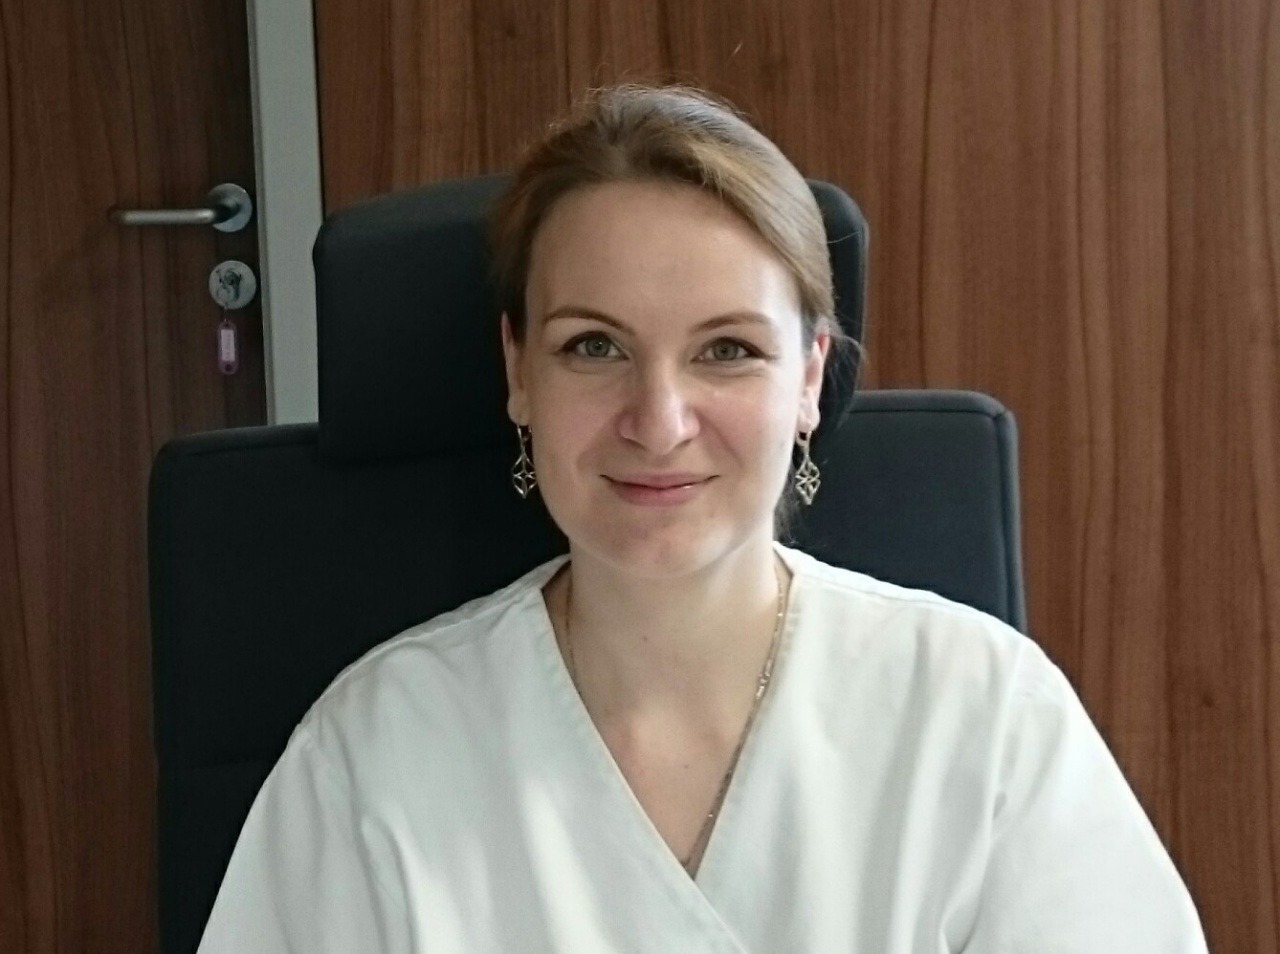 MUDr. Viera Belušáková je gynekologička - pôrodníčka na Klinike reprodukčnej medicíny, gynekológie a urológie Iscare Reprofit v Bratislave. 